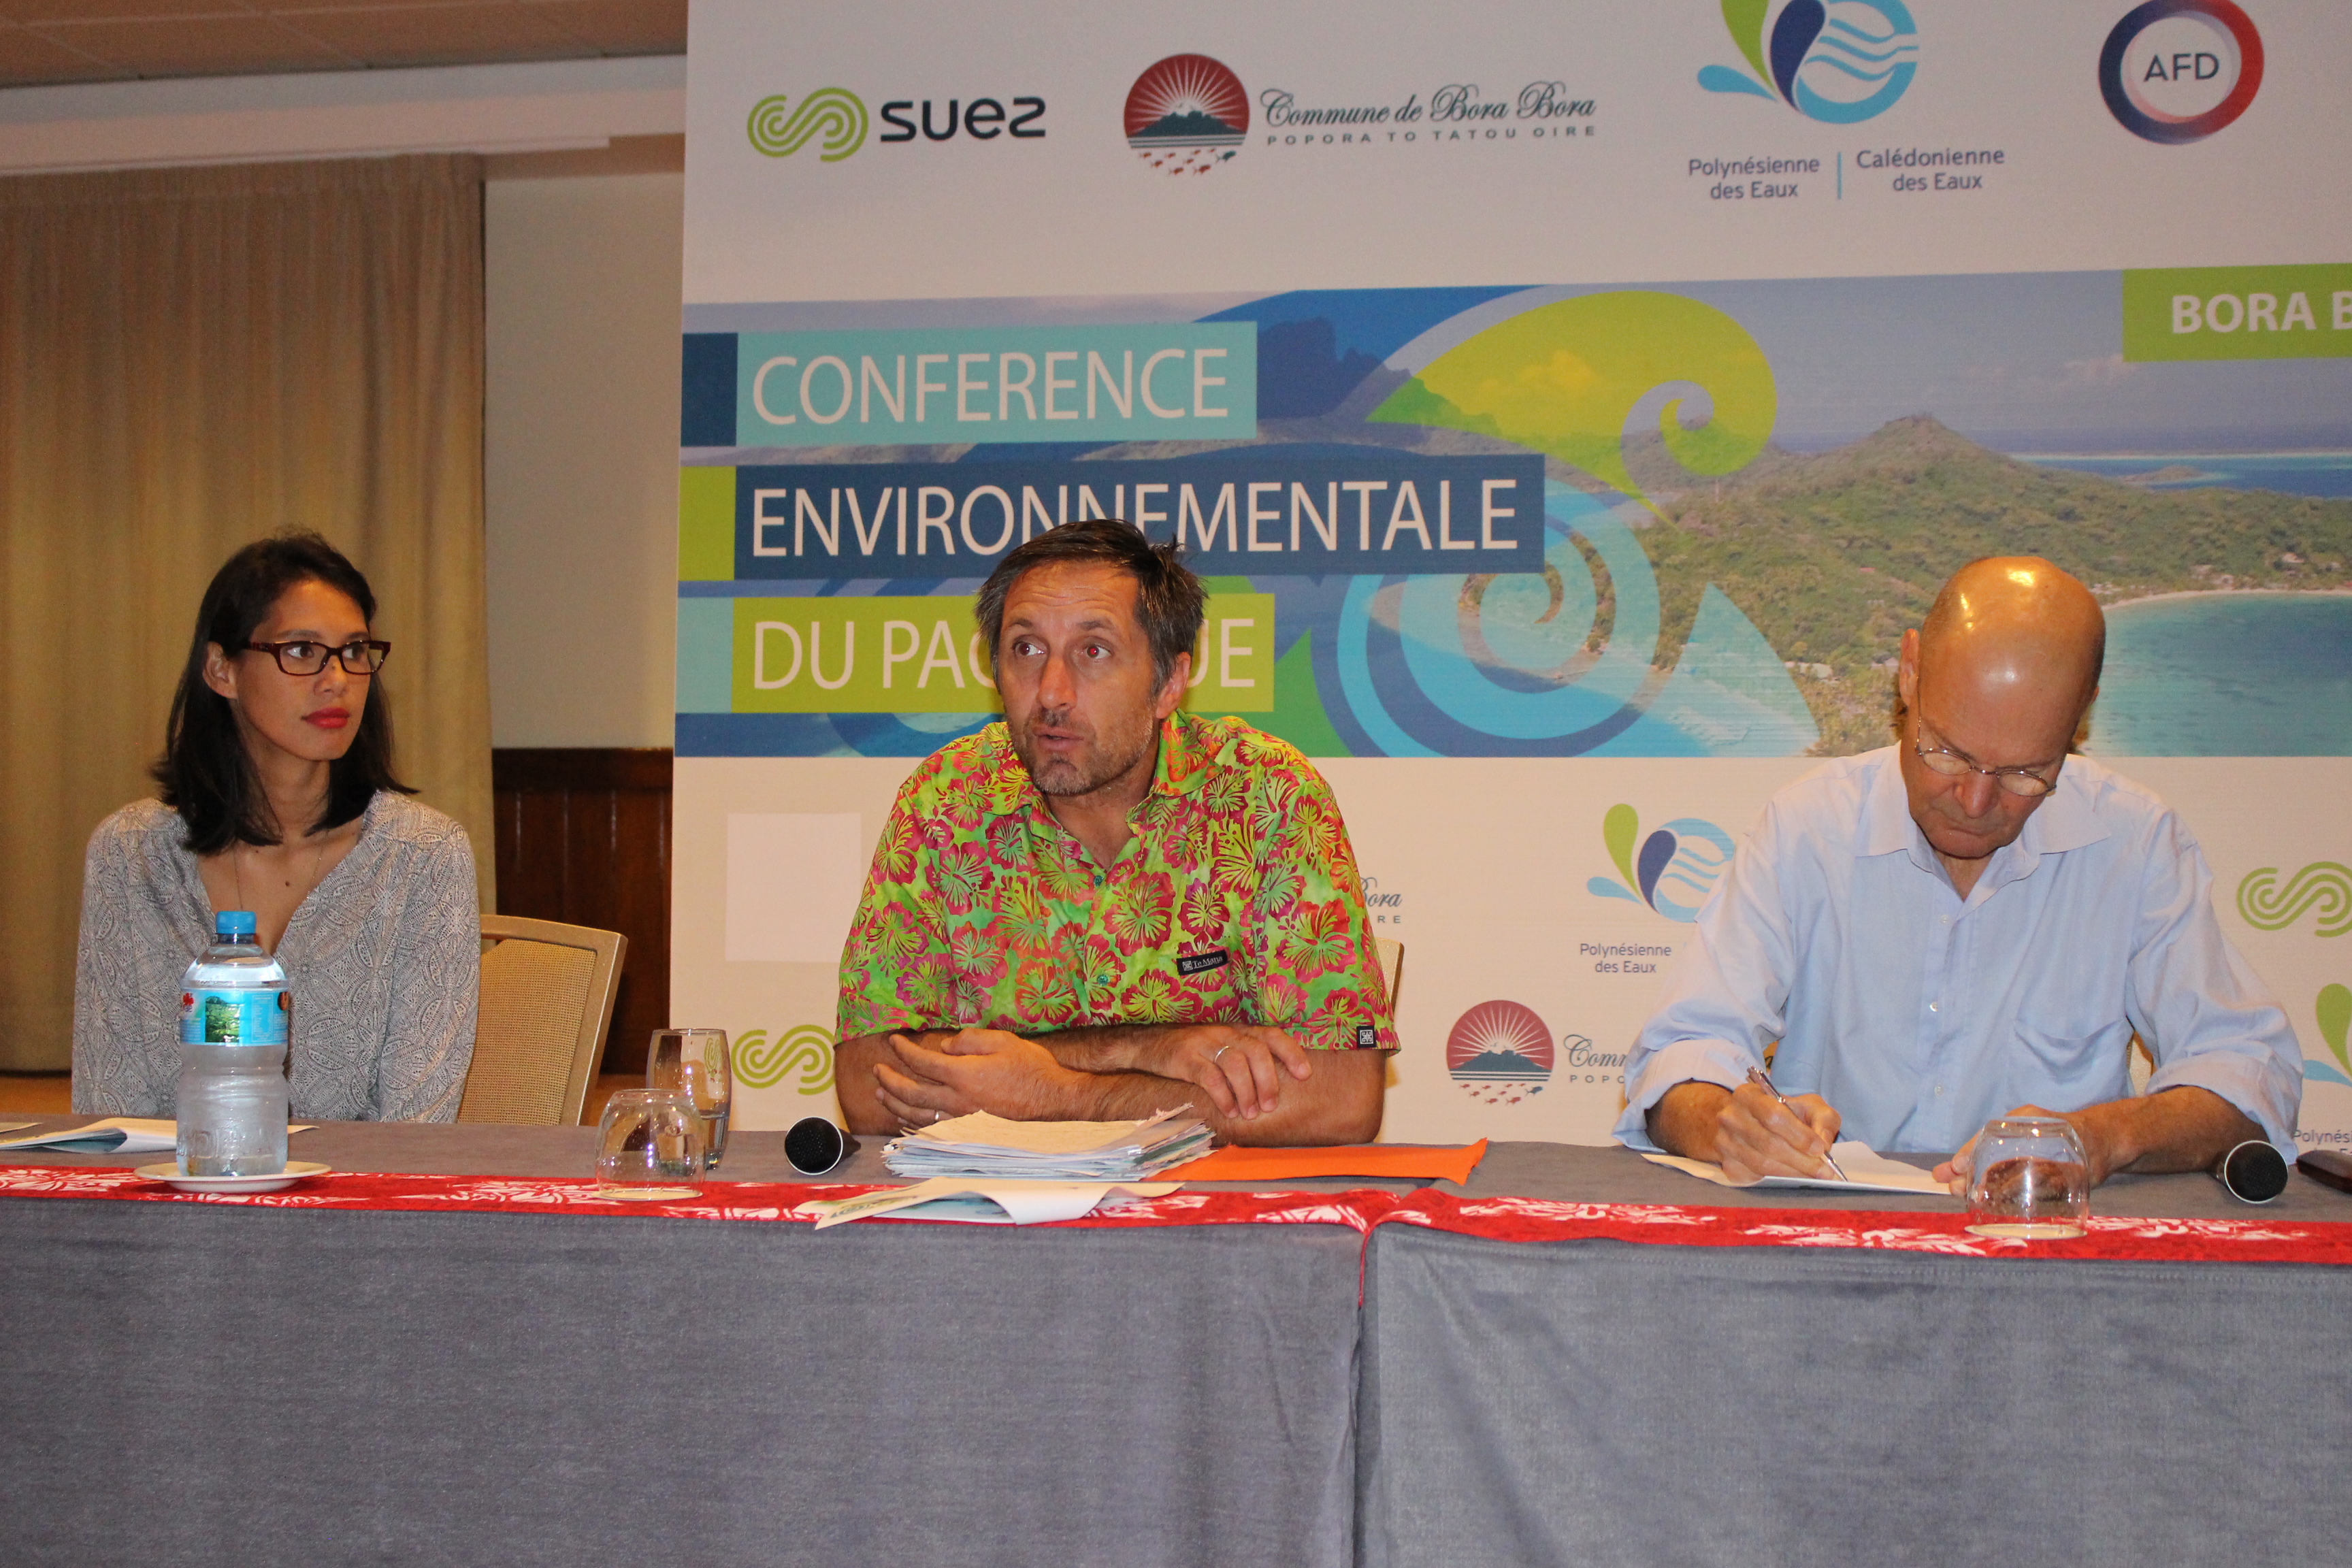 Bora Bora va accueillir la 1ère conférence environnementale du Pacifique